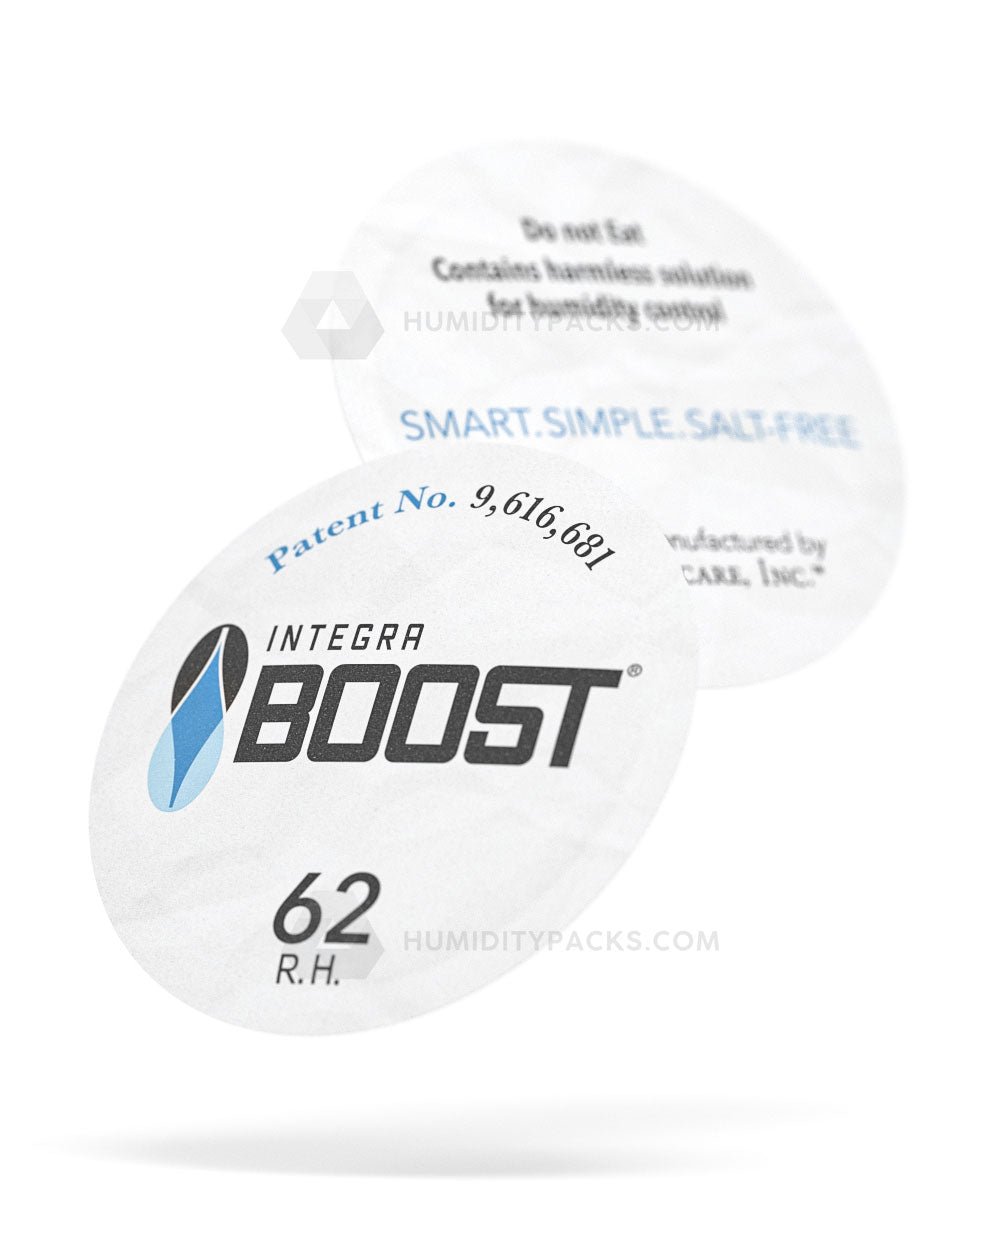 53mm Integra Boost 62% Humidity Packs 100/Box